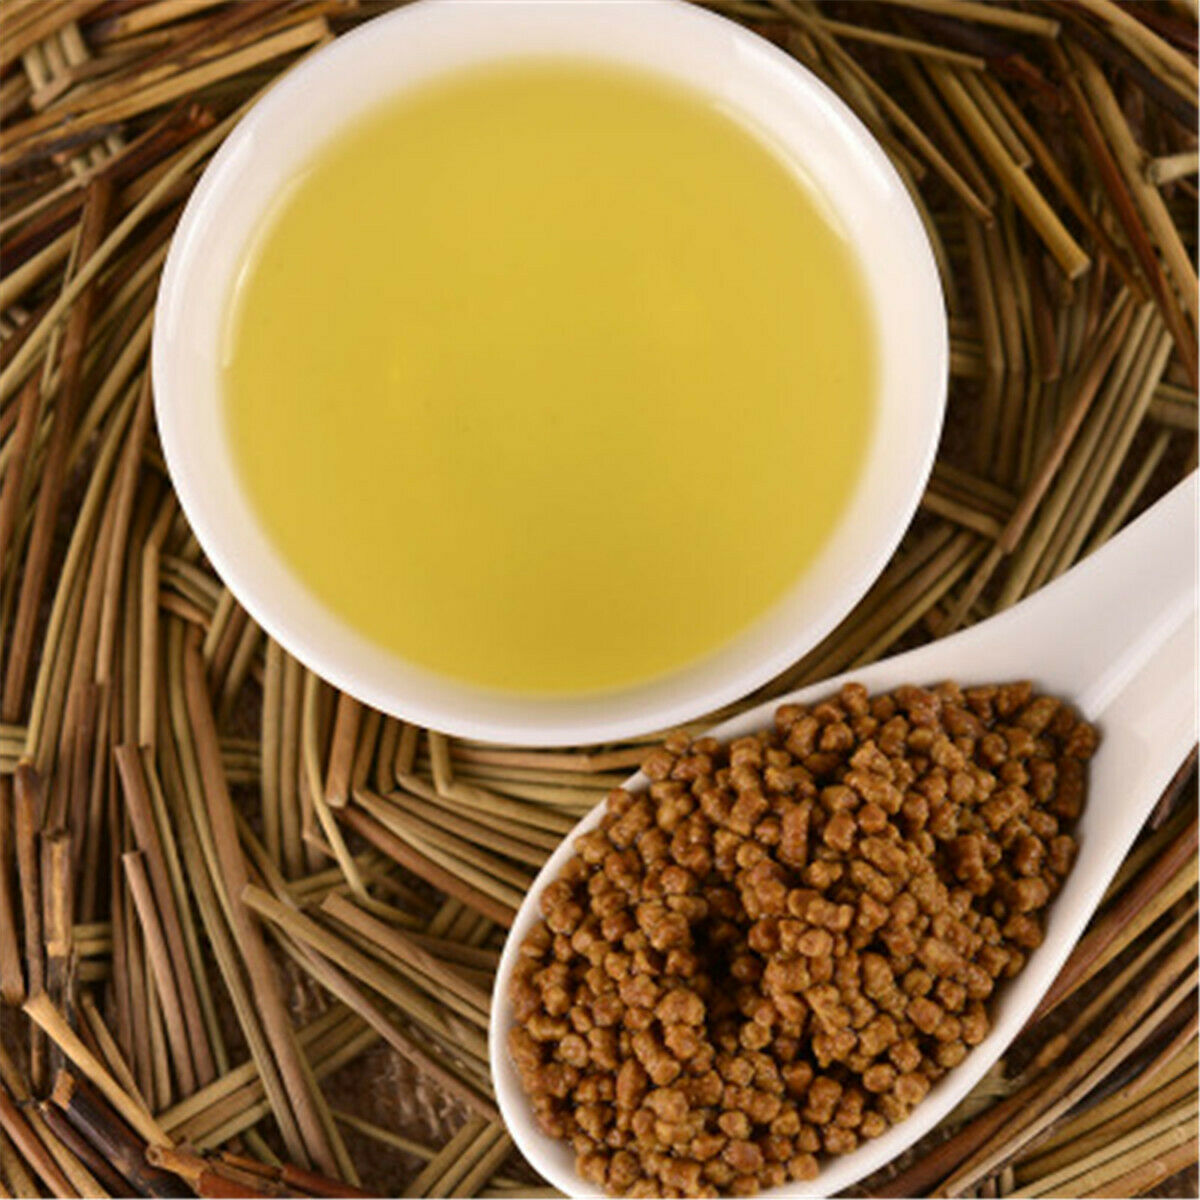 HelloYoung Roasted Natural Tartary Buckwheat Tea Green Tea Loose Leaf Organic Herbal Tea